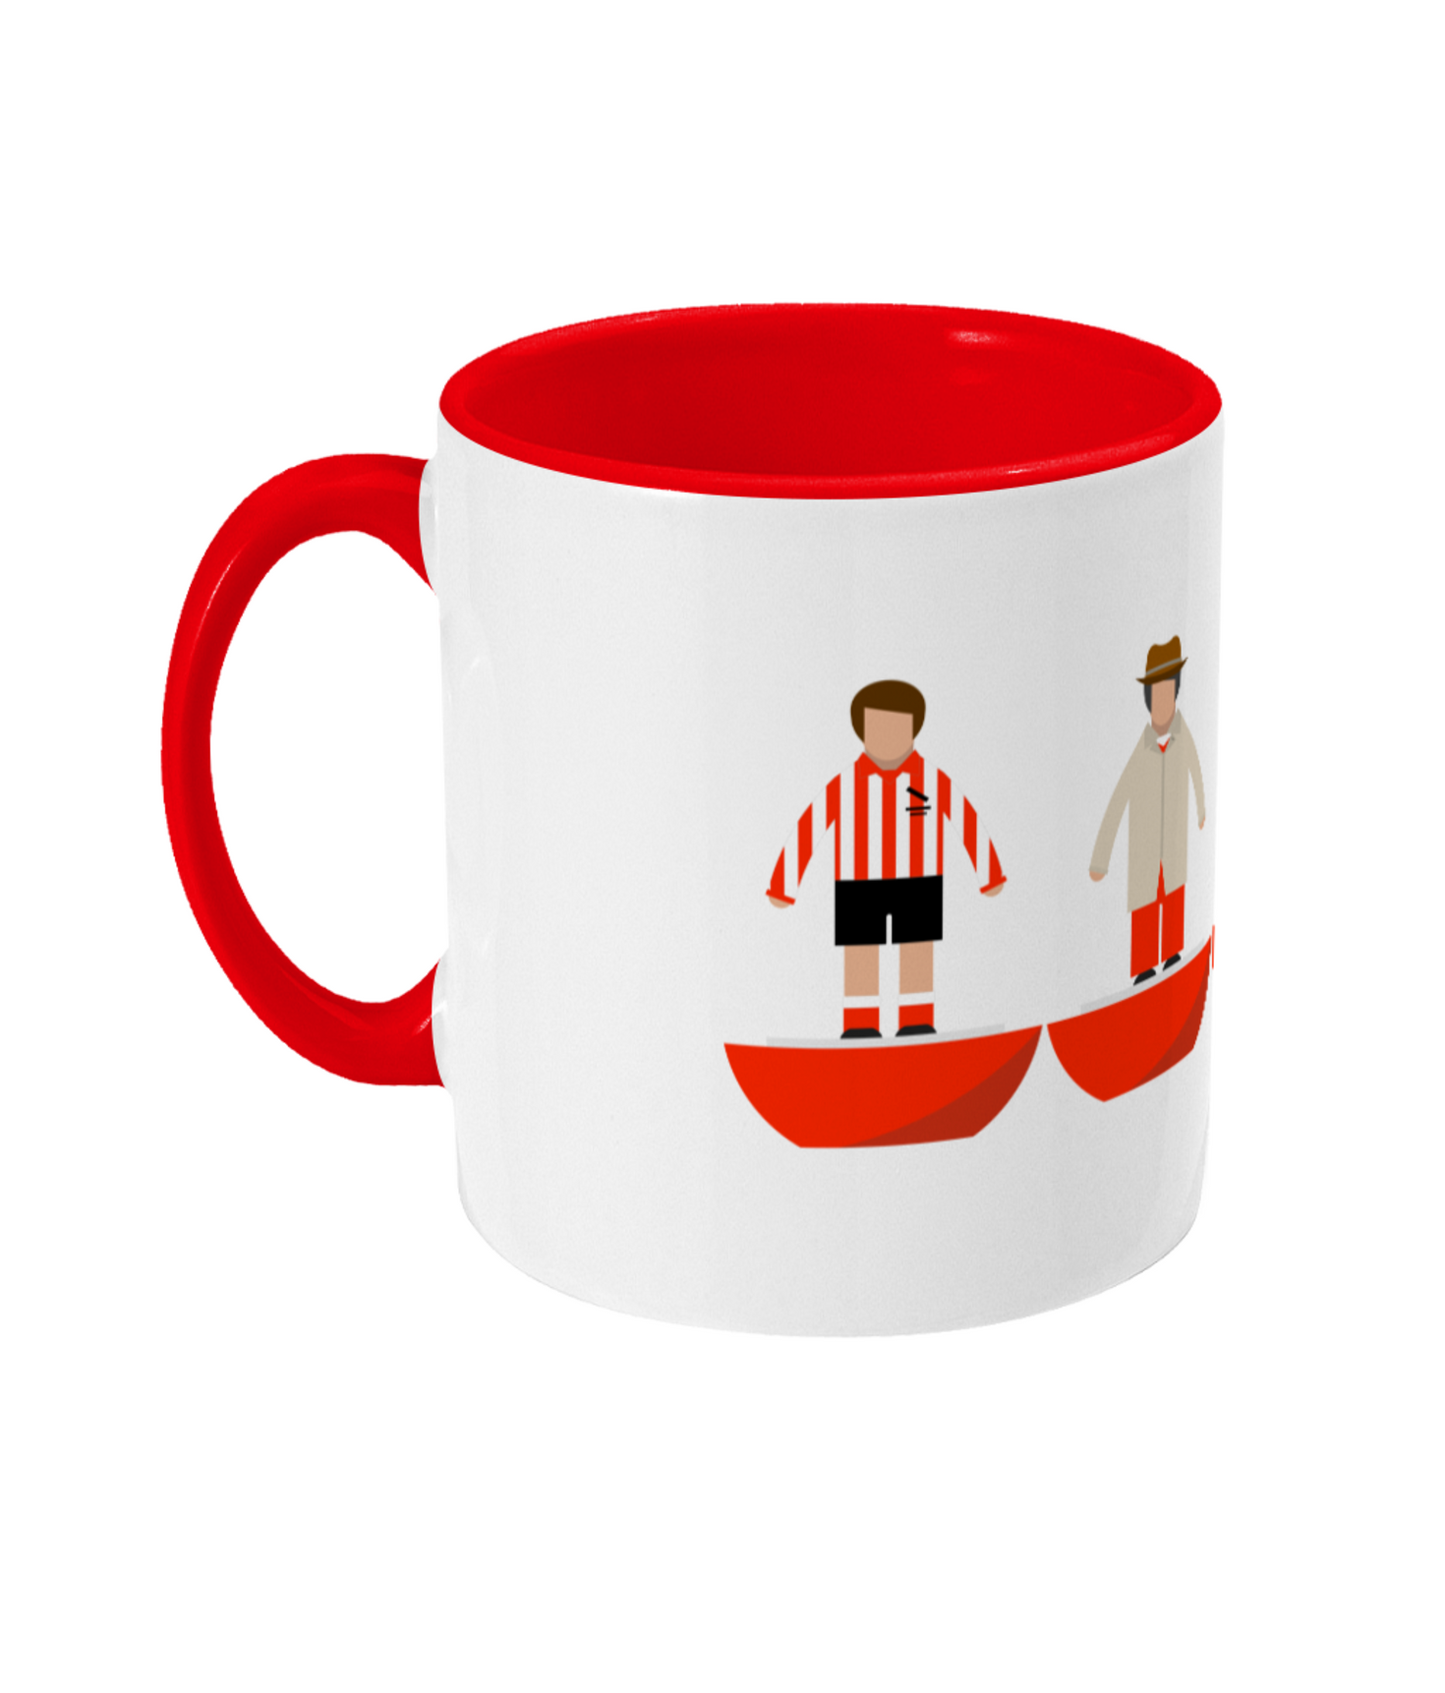 Football Kits 'Sunderland combined' Mug